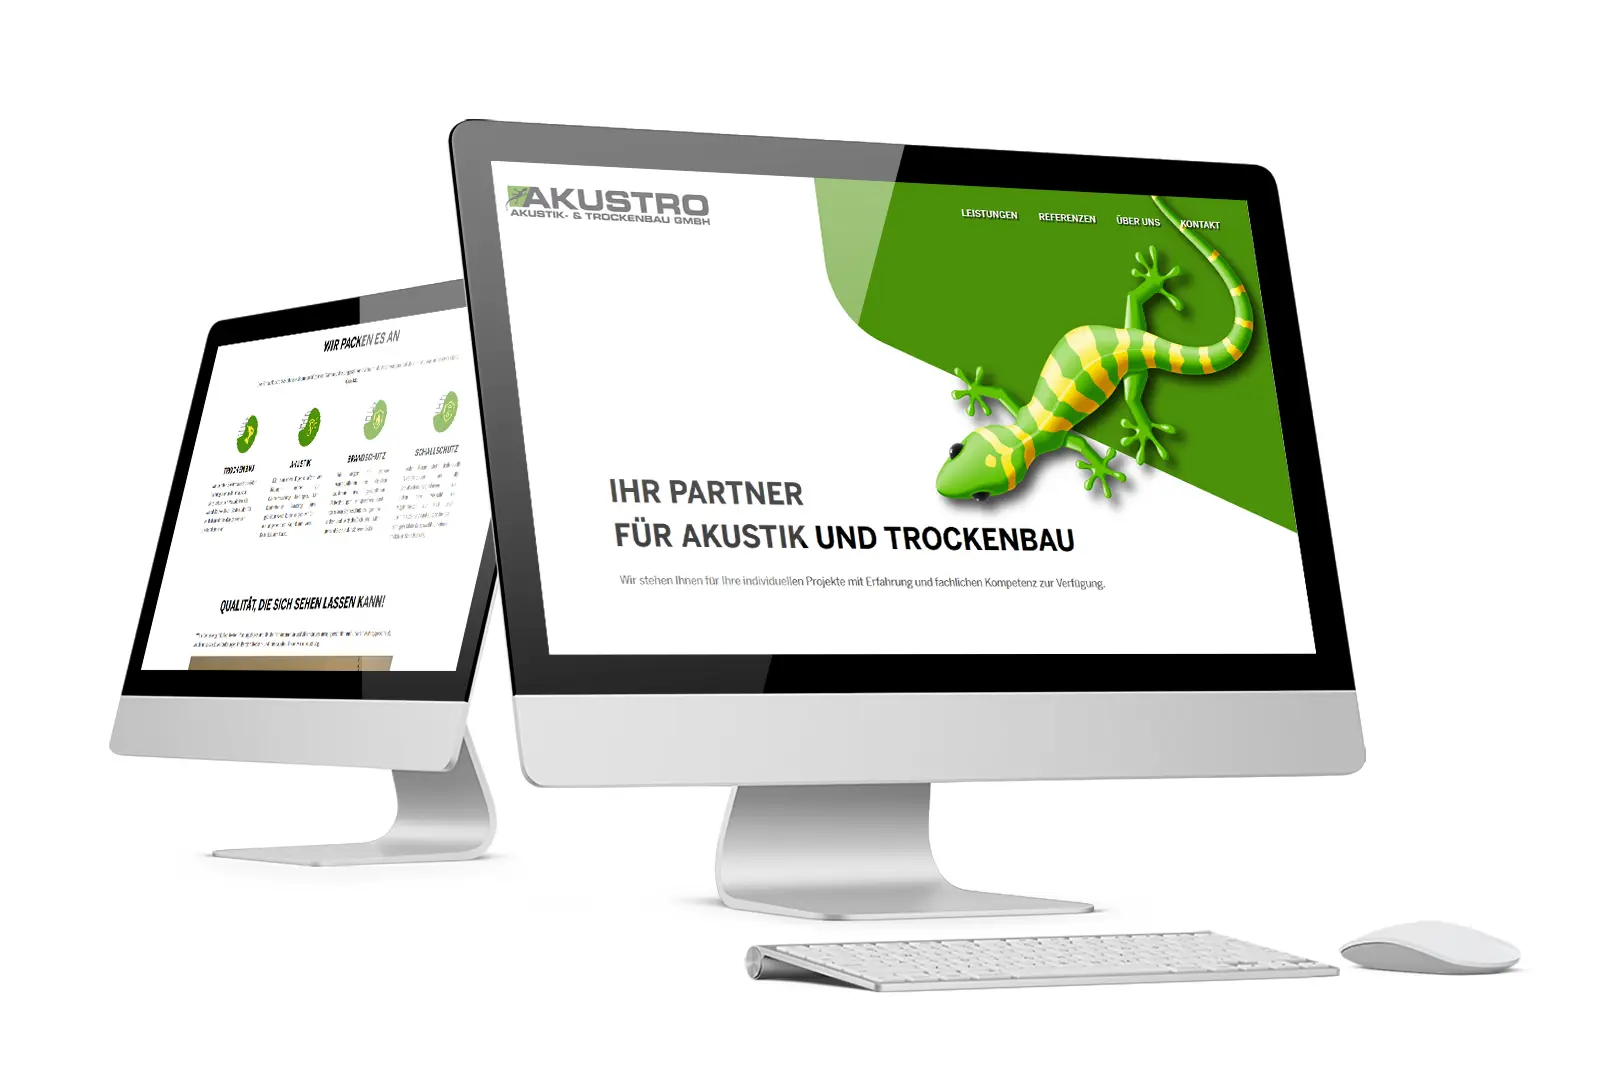 Akustro Akustik- & Trockenbau GmbH - Website